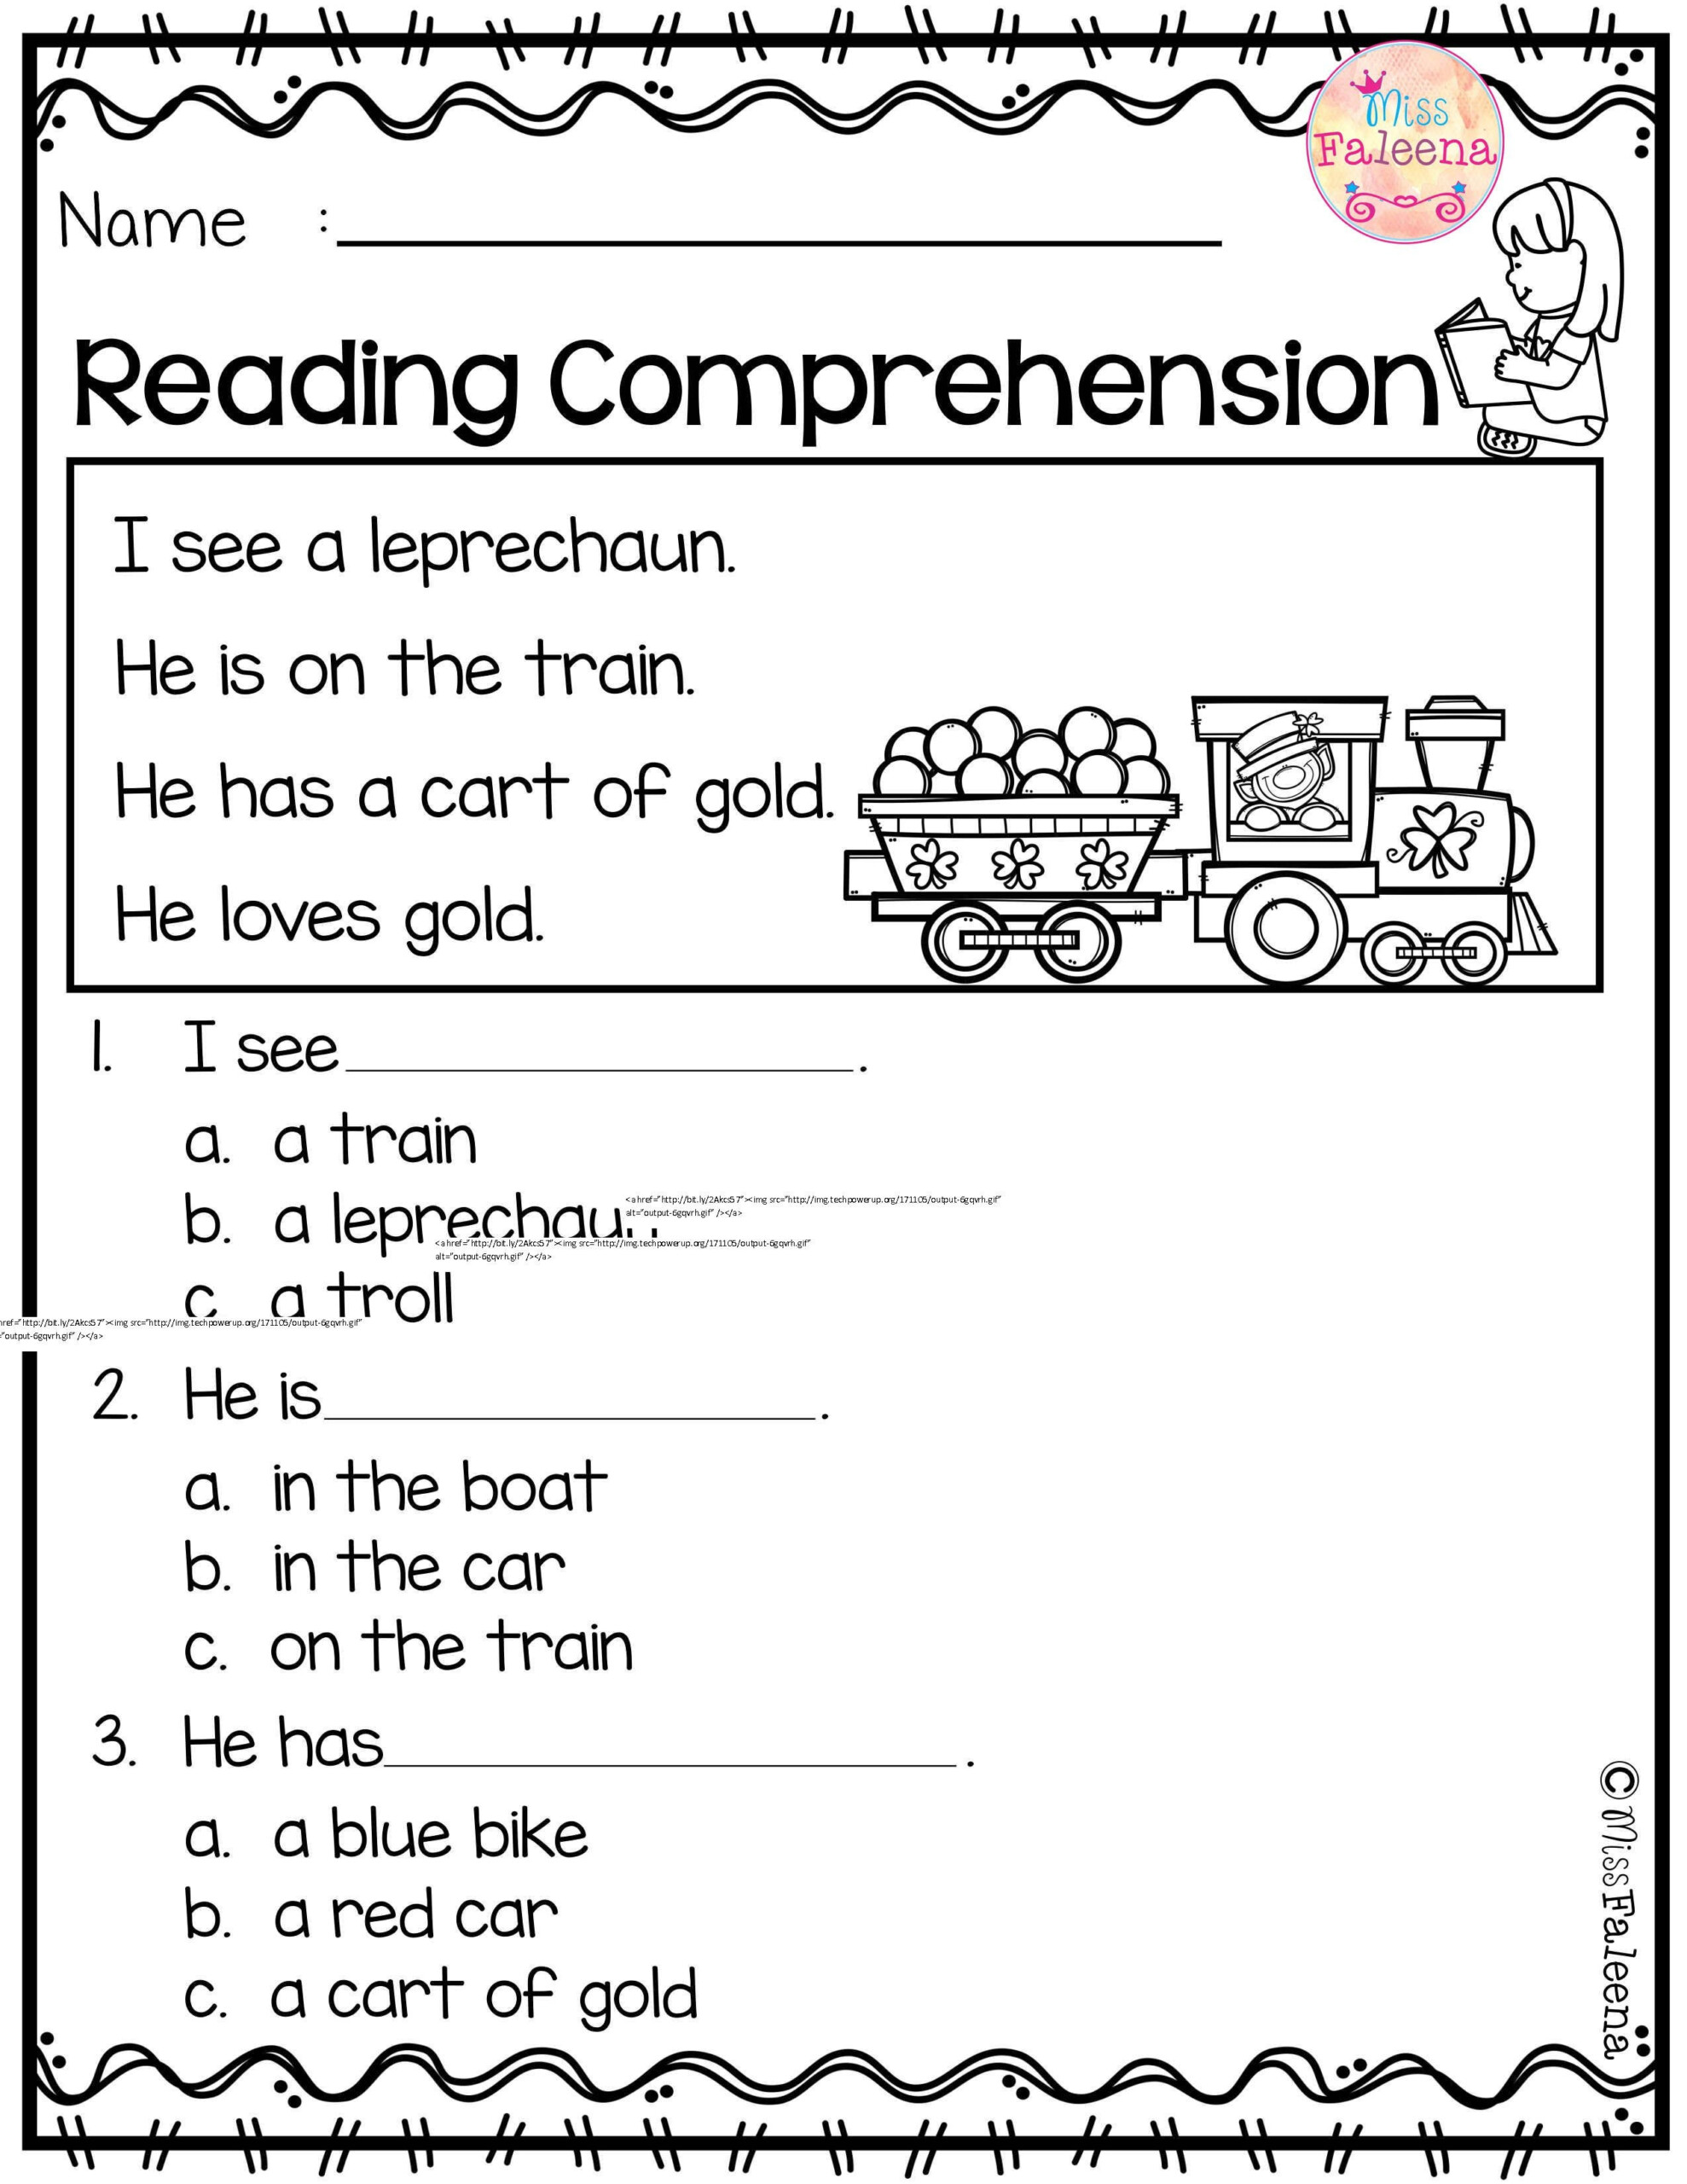 Worksheet Kindergarten Reading Comprehension Free Reading Comprehension Third Grade Reading